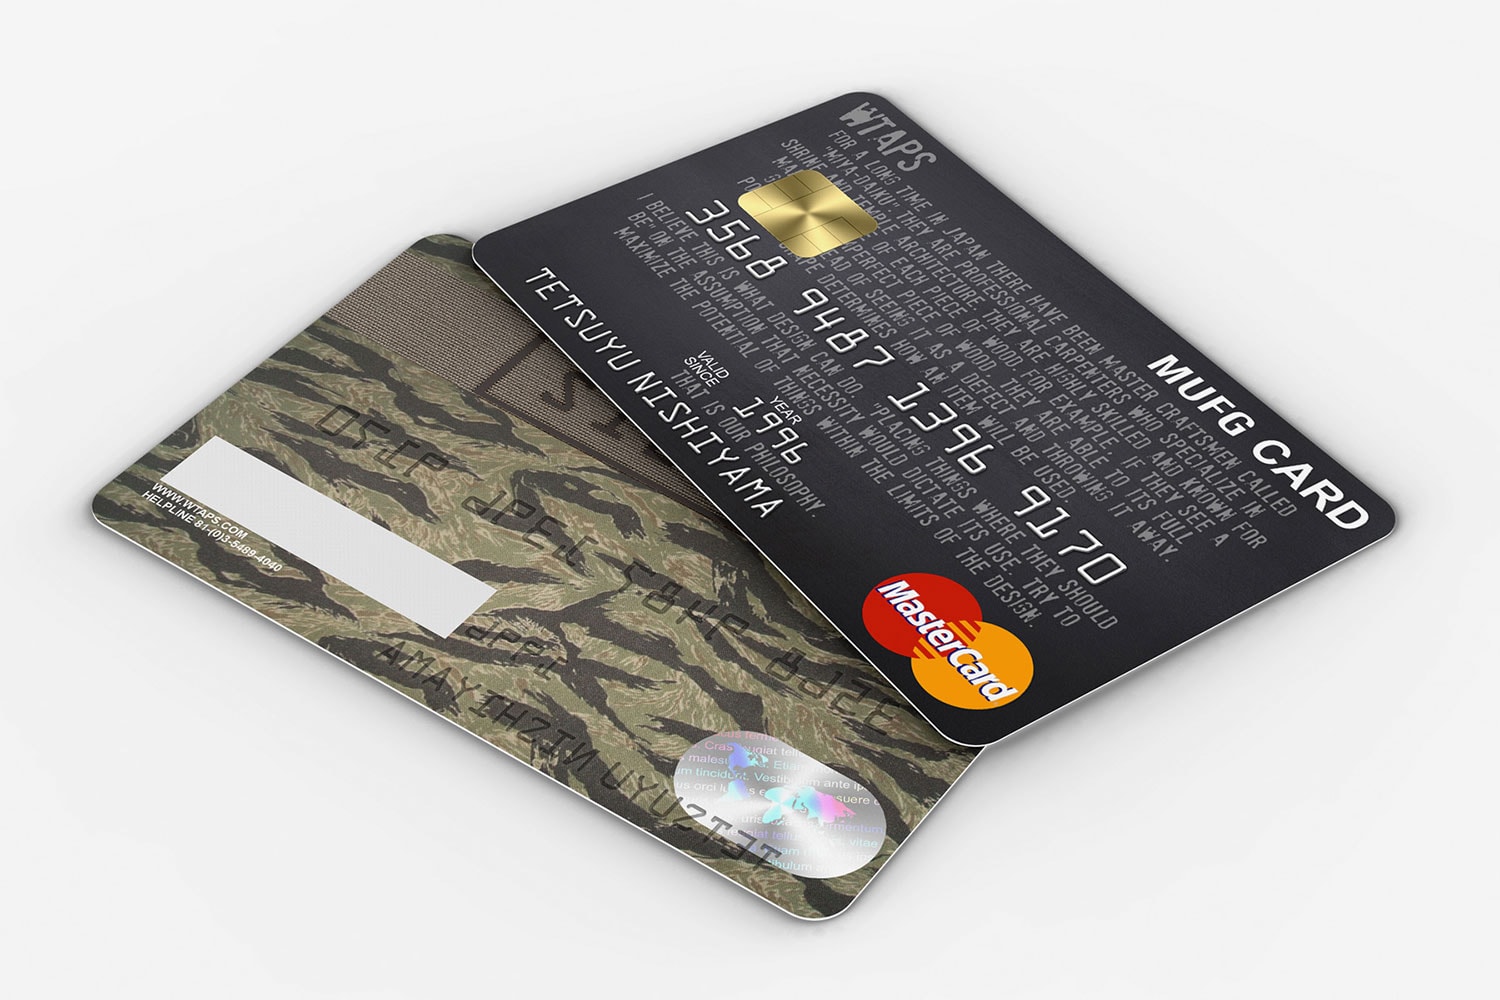 정글 베이지 스트릿 브랜드가 만든 신용카드 시리즈 공개 2017 Future Street Cred by jungle beige